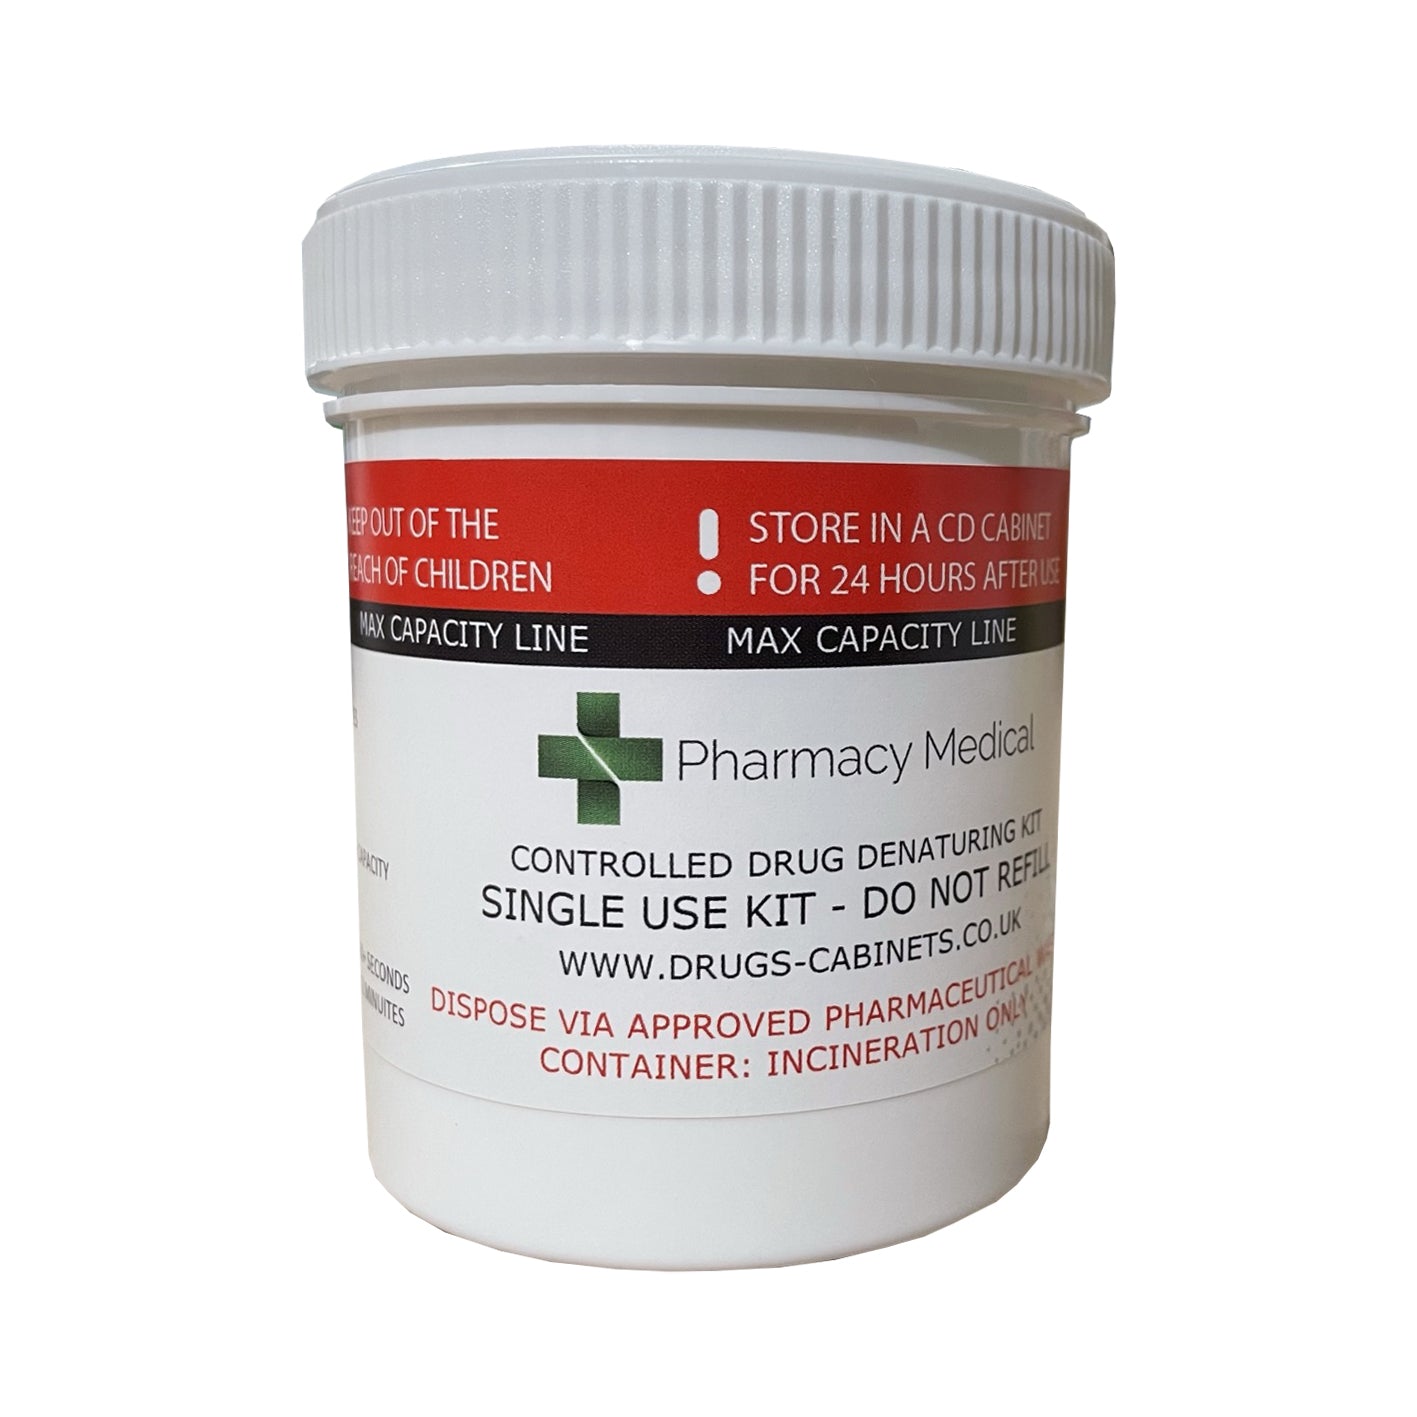 Pharmacy Medical - PMDEN250 DRUG DENATURING KIT | 250ml | PACK OF 1, 3 or 10